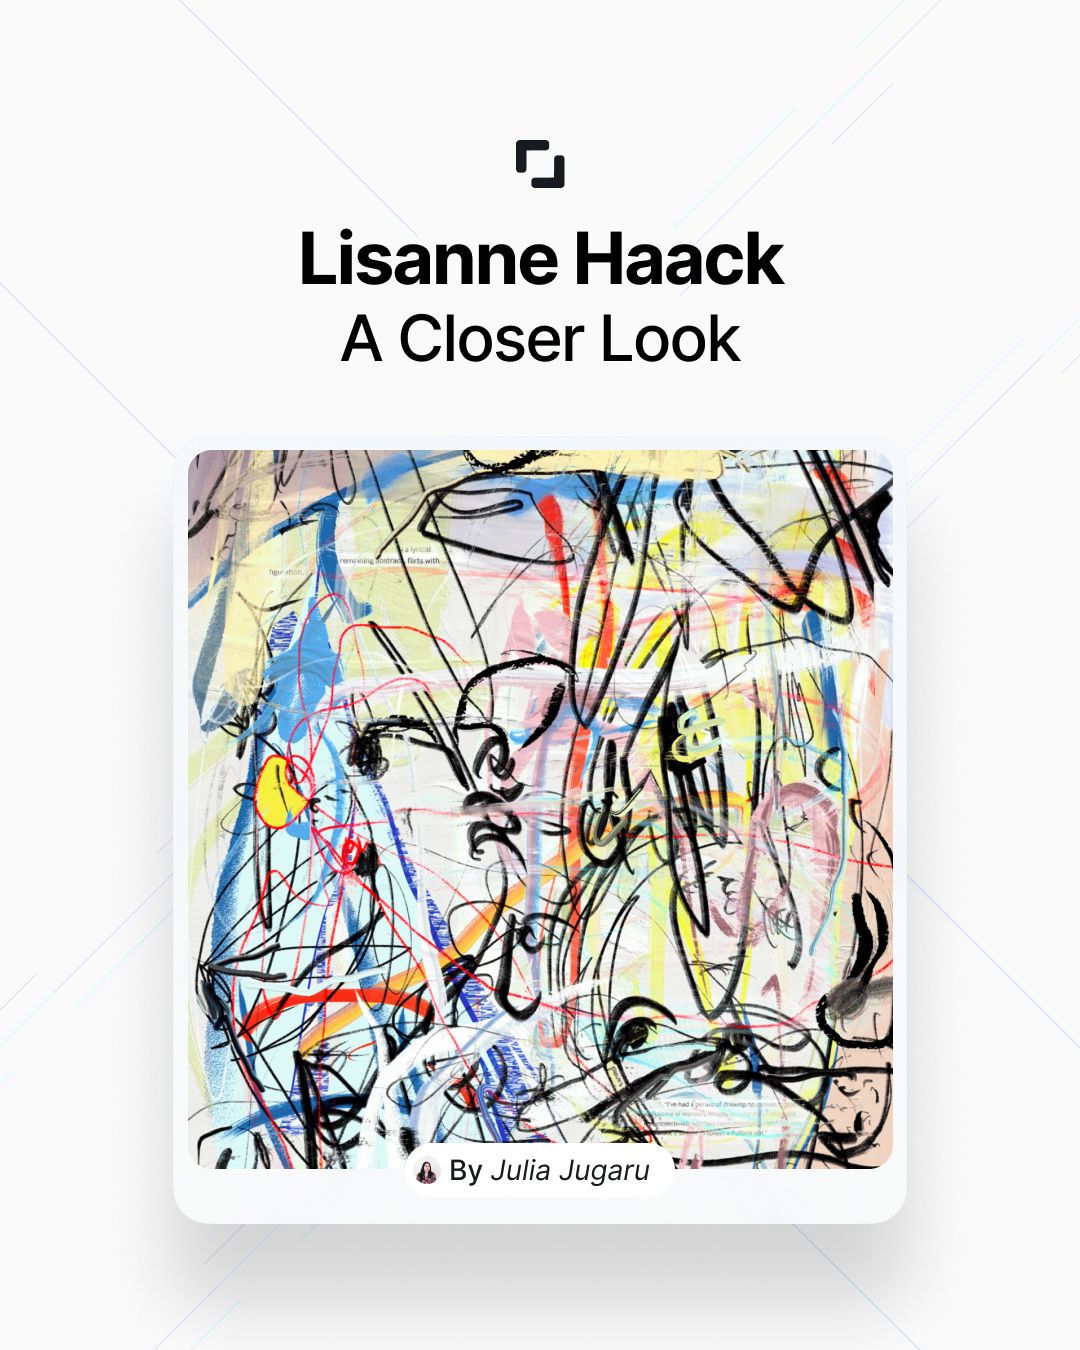 Lisanne Haack: A closer look